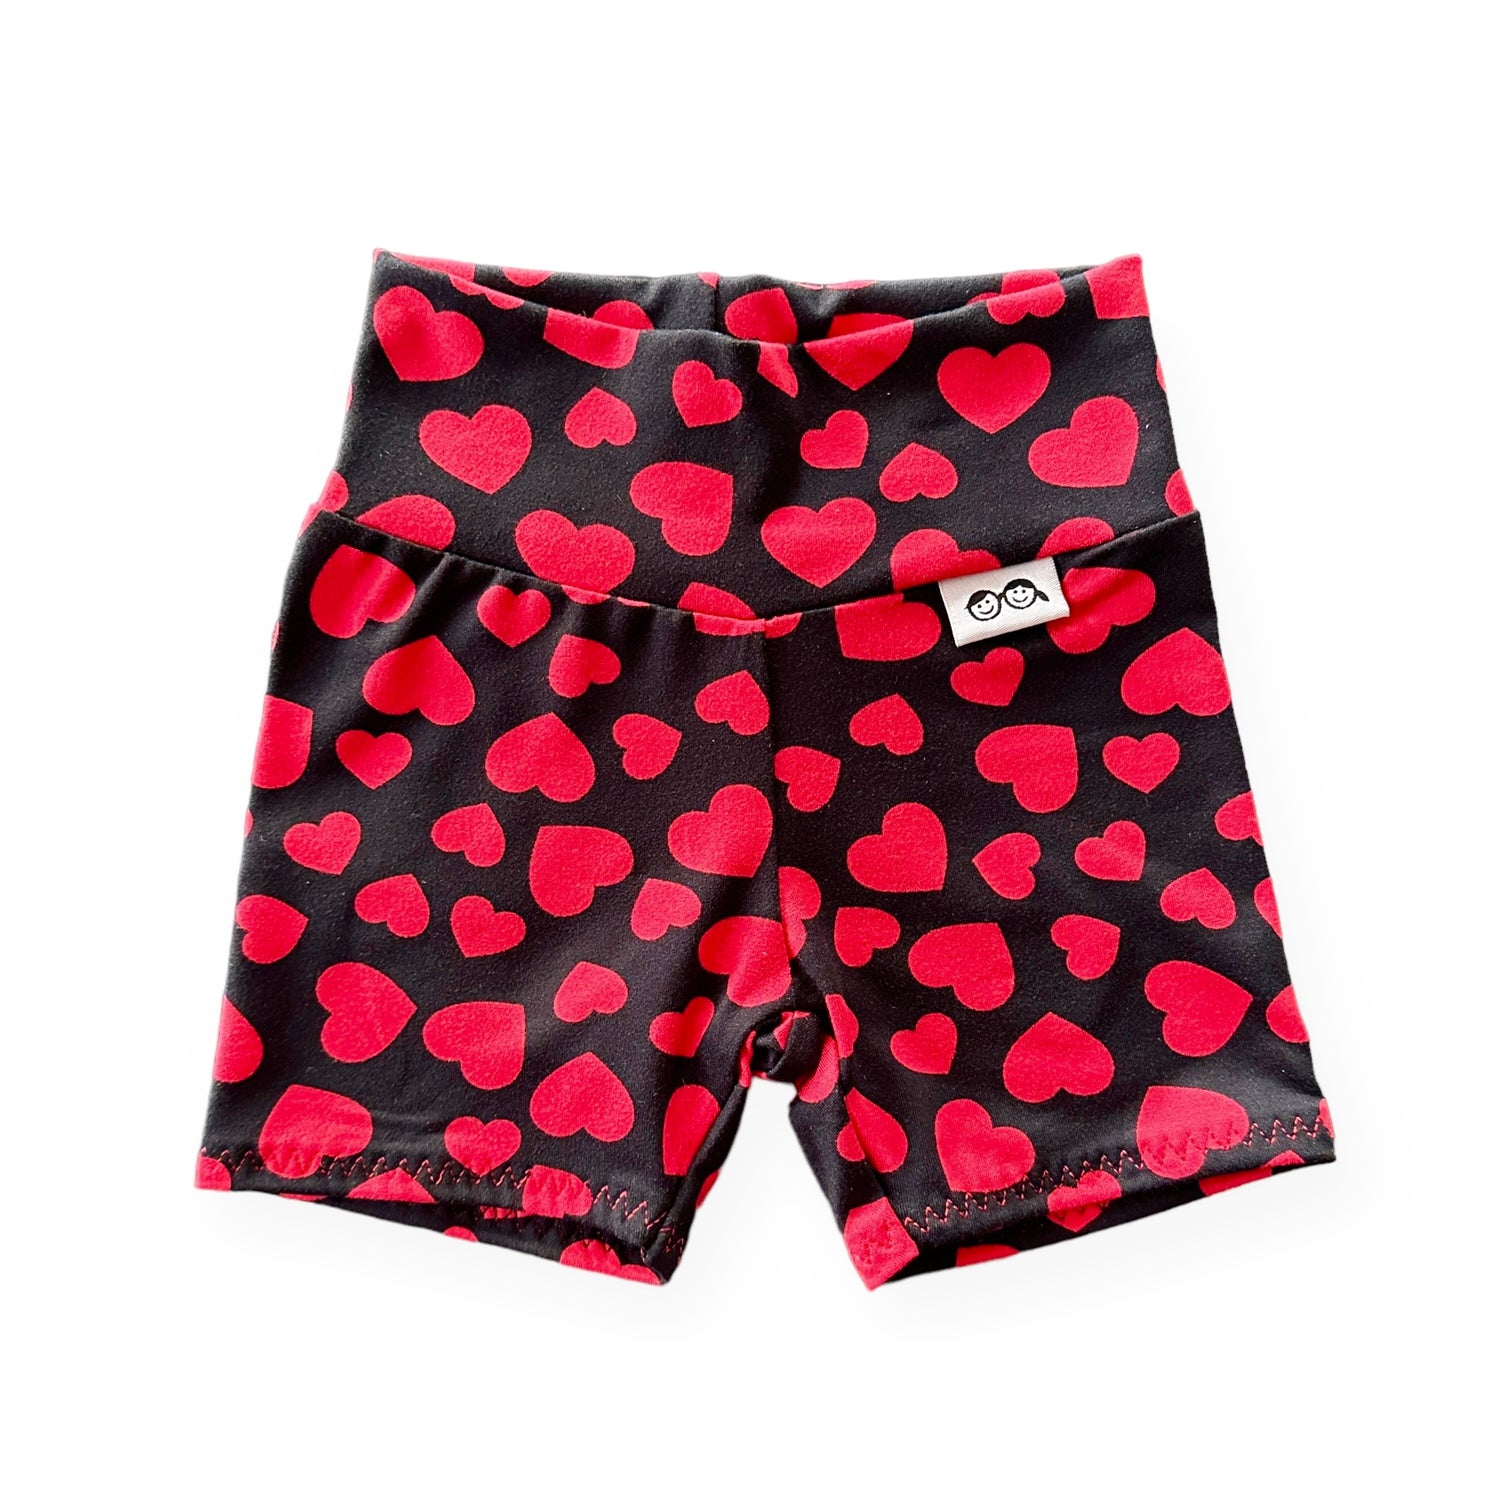 Red Hearts on Black Biker Shorts Lounge Set